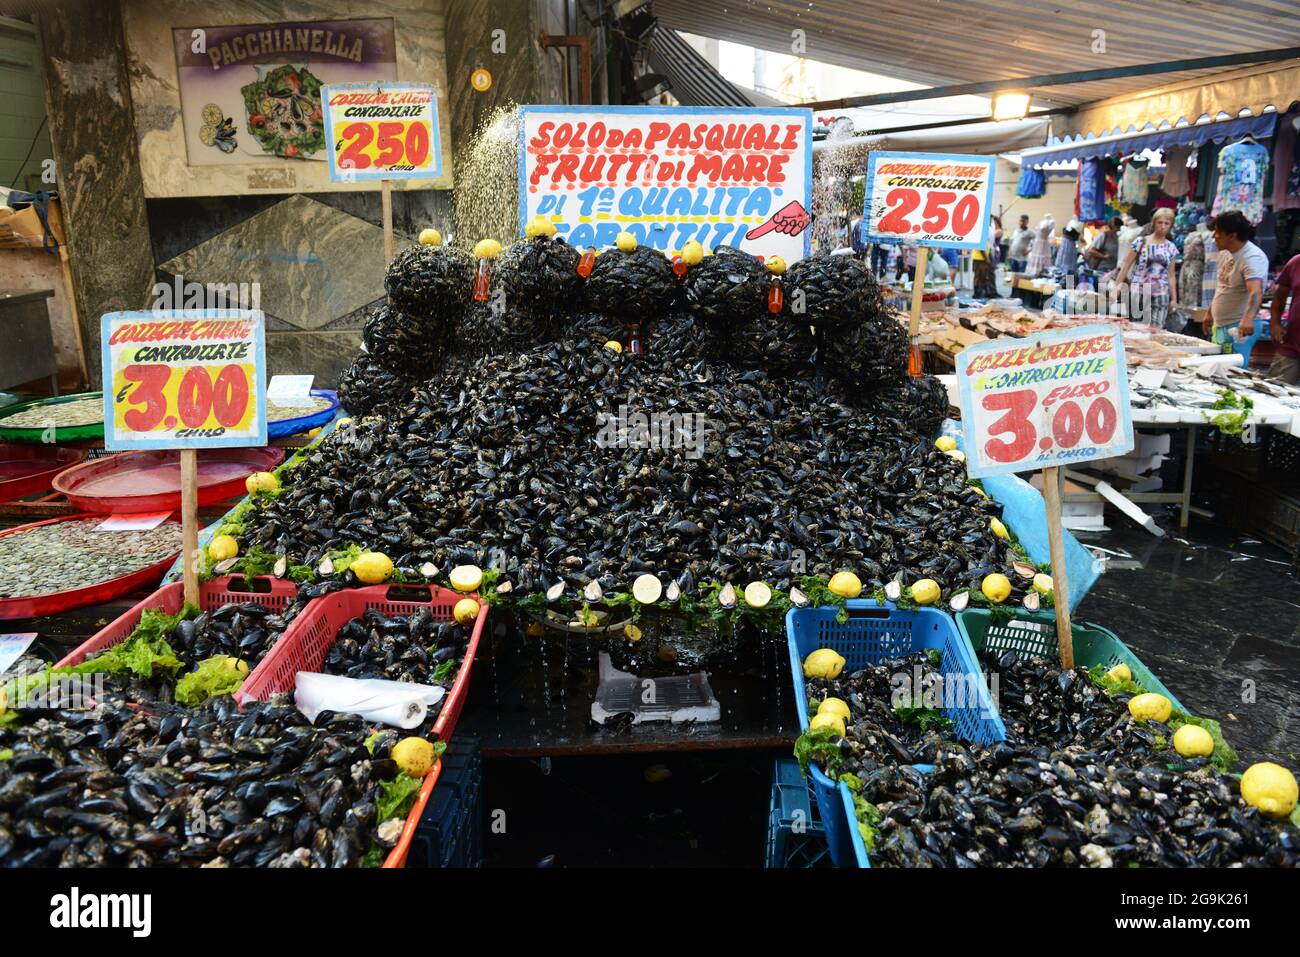 The vibrant seafood market at the Mercatino Antignano in Naples, Italy. Stock Photo